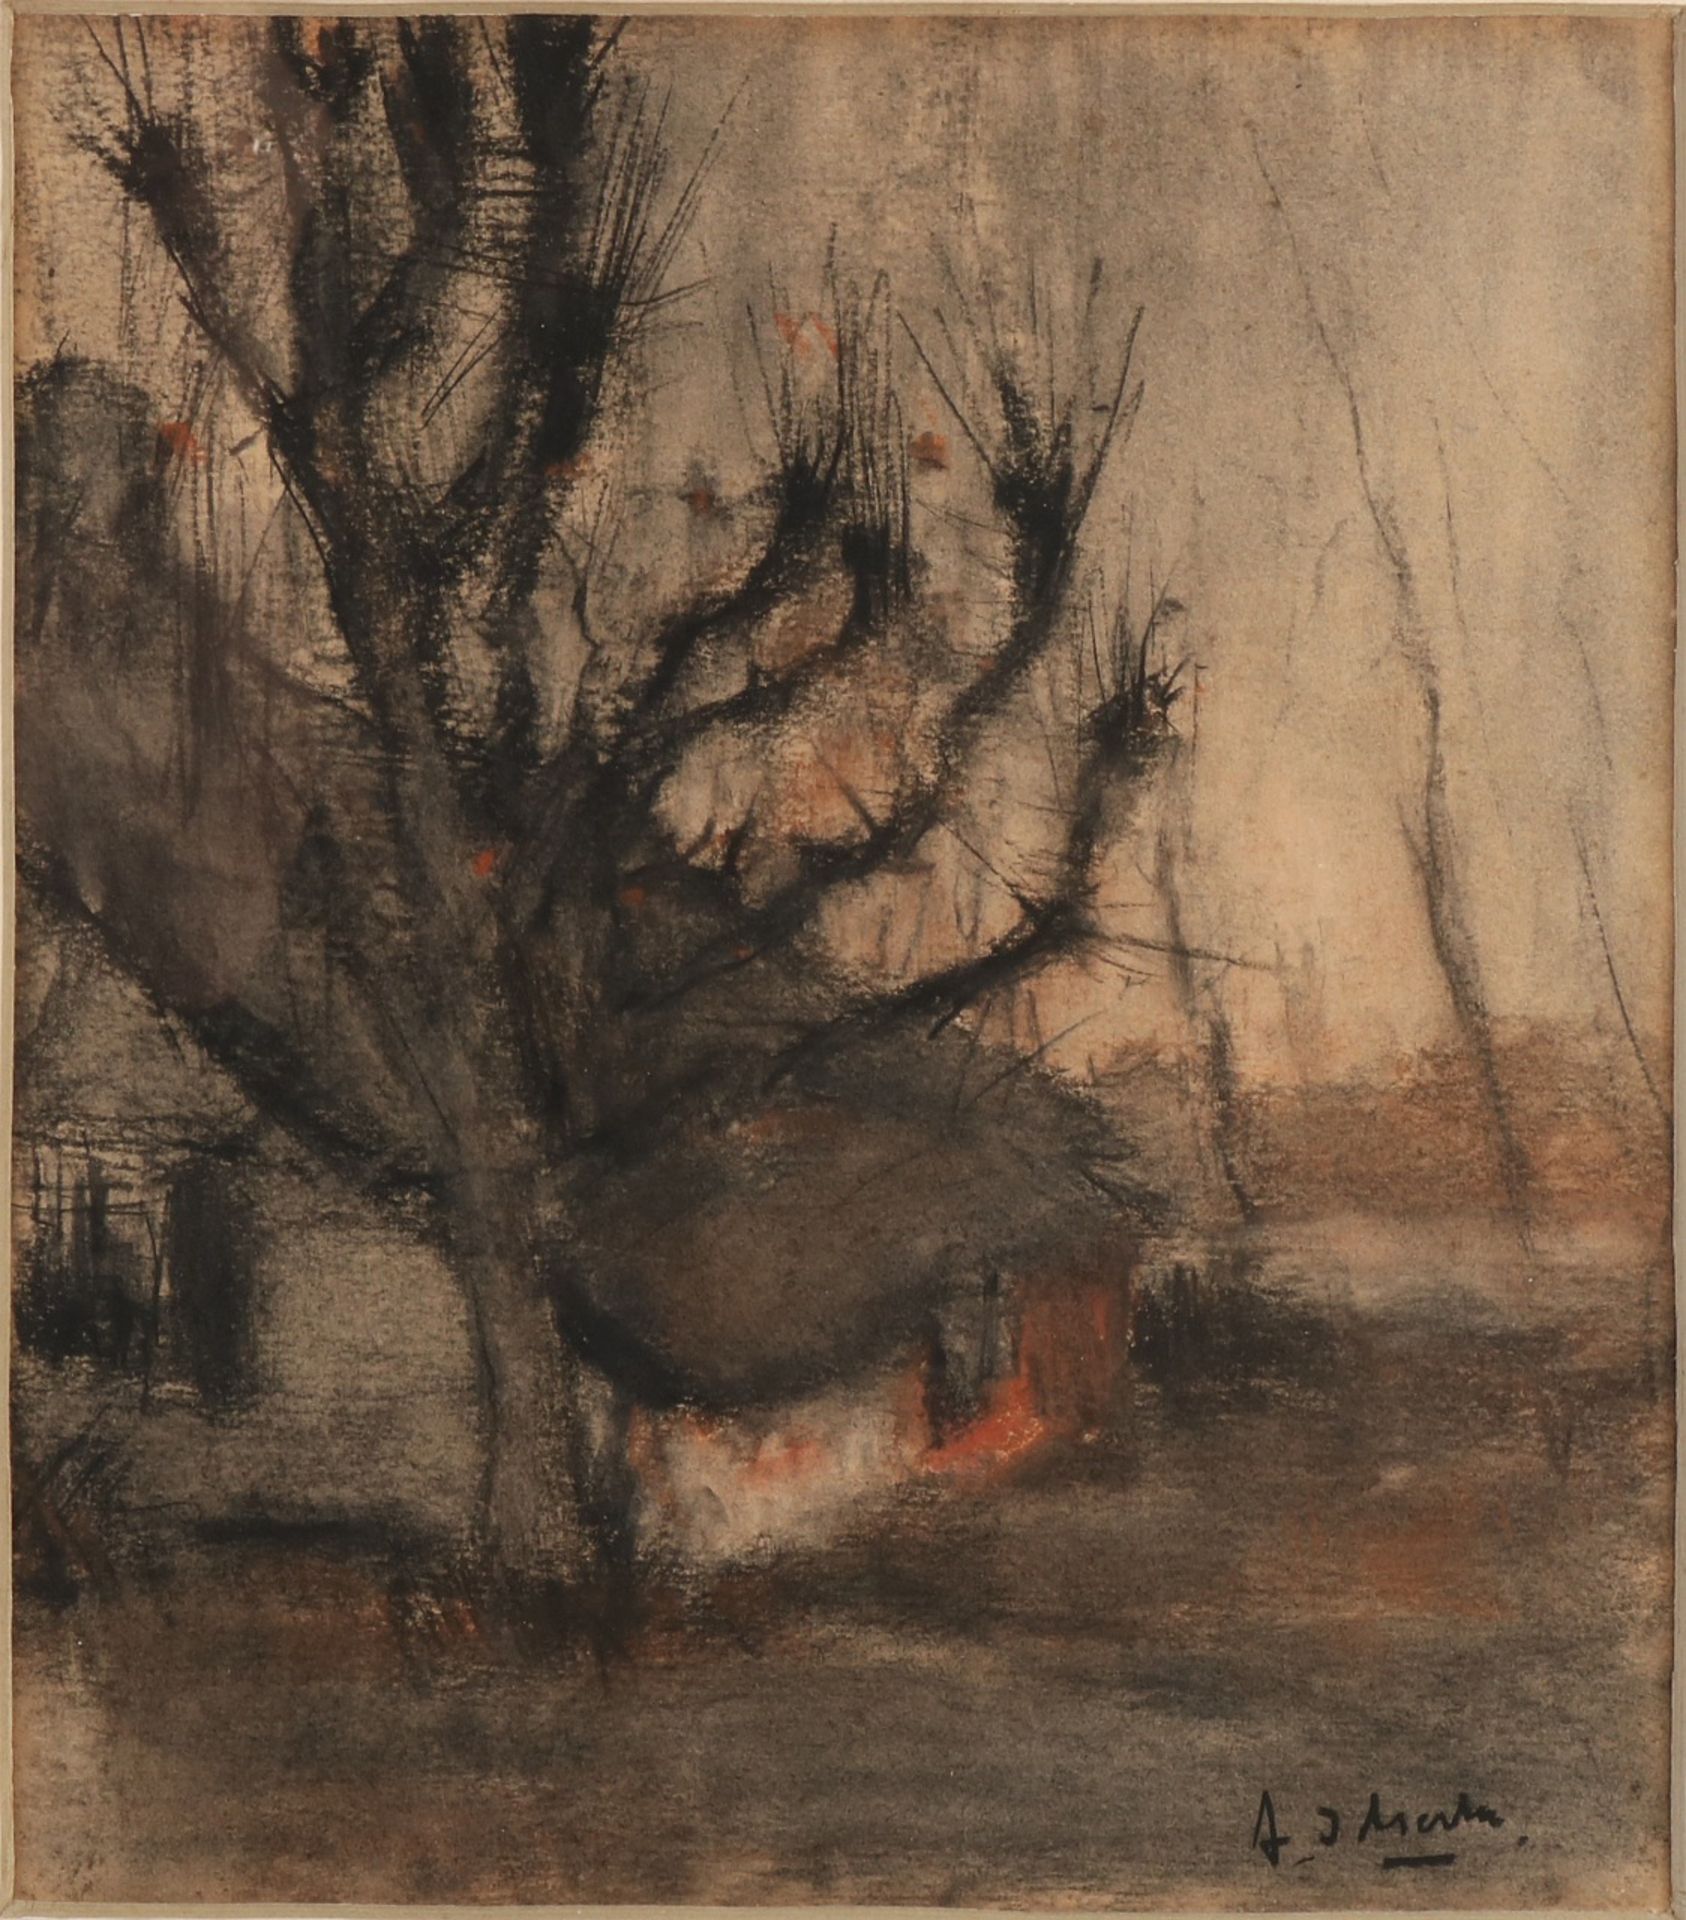 A. Idserda. 1879 - 1952. Bauernhof mit Pollard Weide. Pastell auf Papier. Abmessungen: H 32 x 28